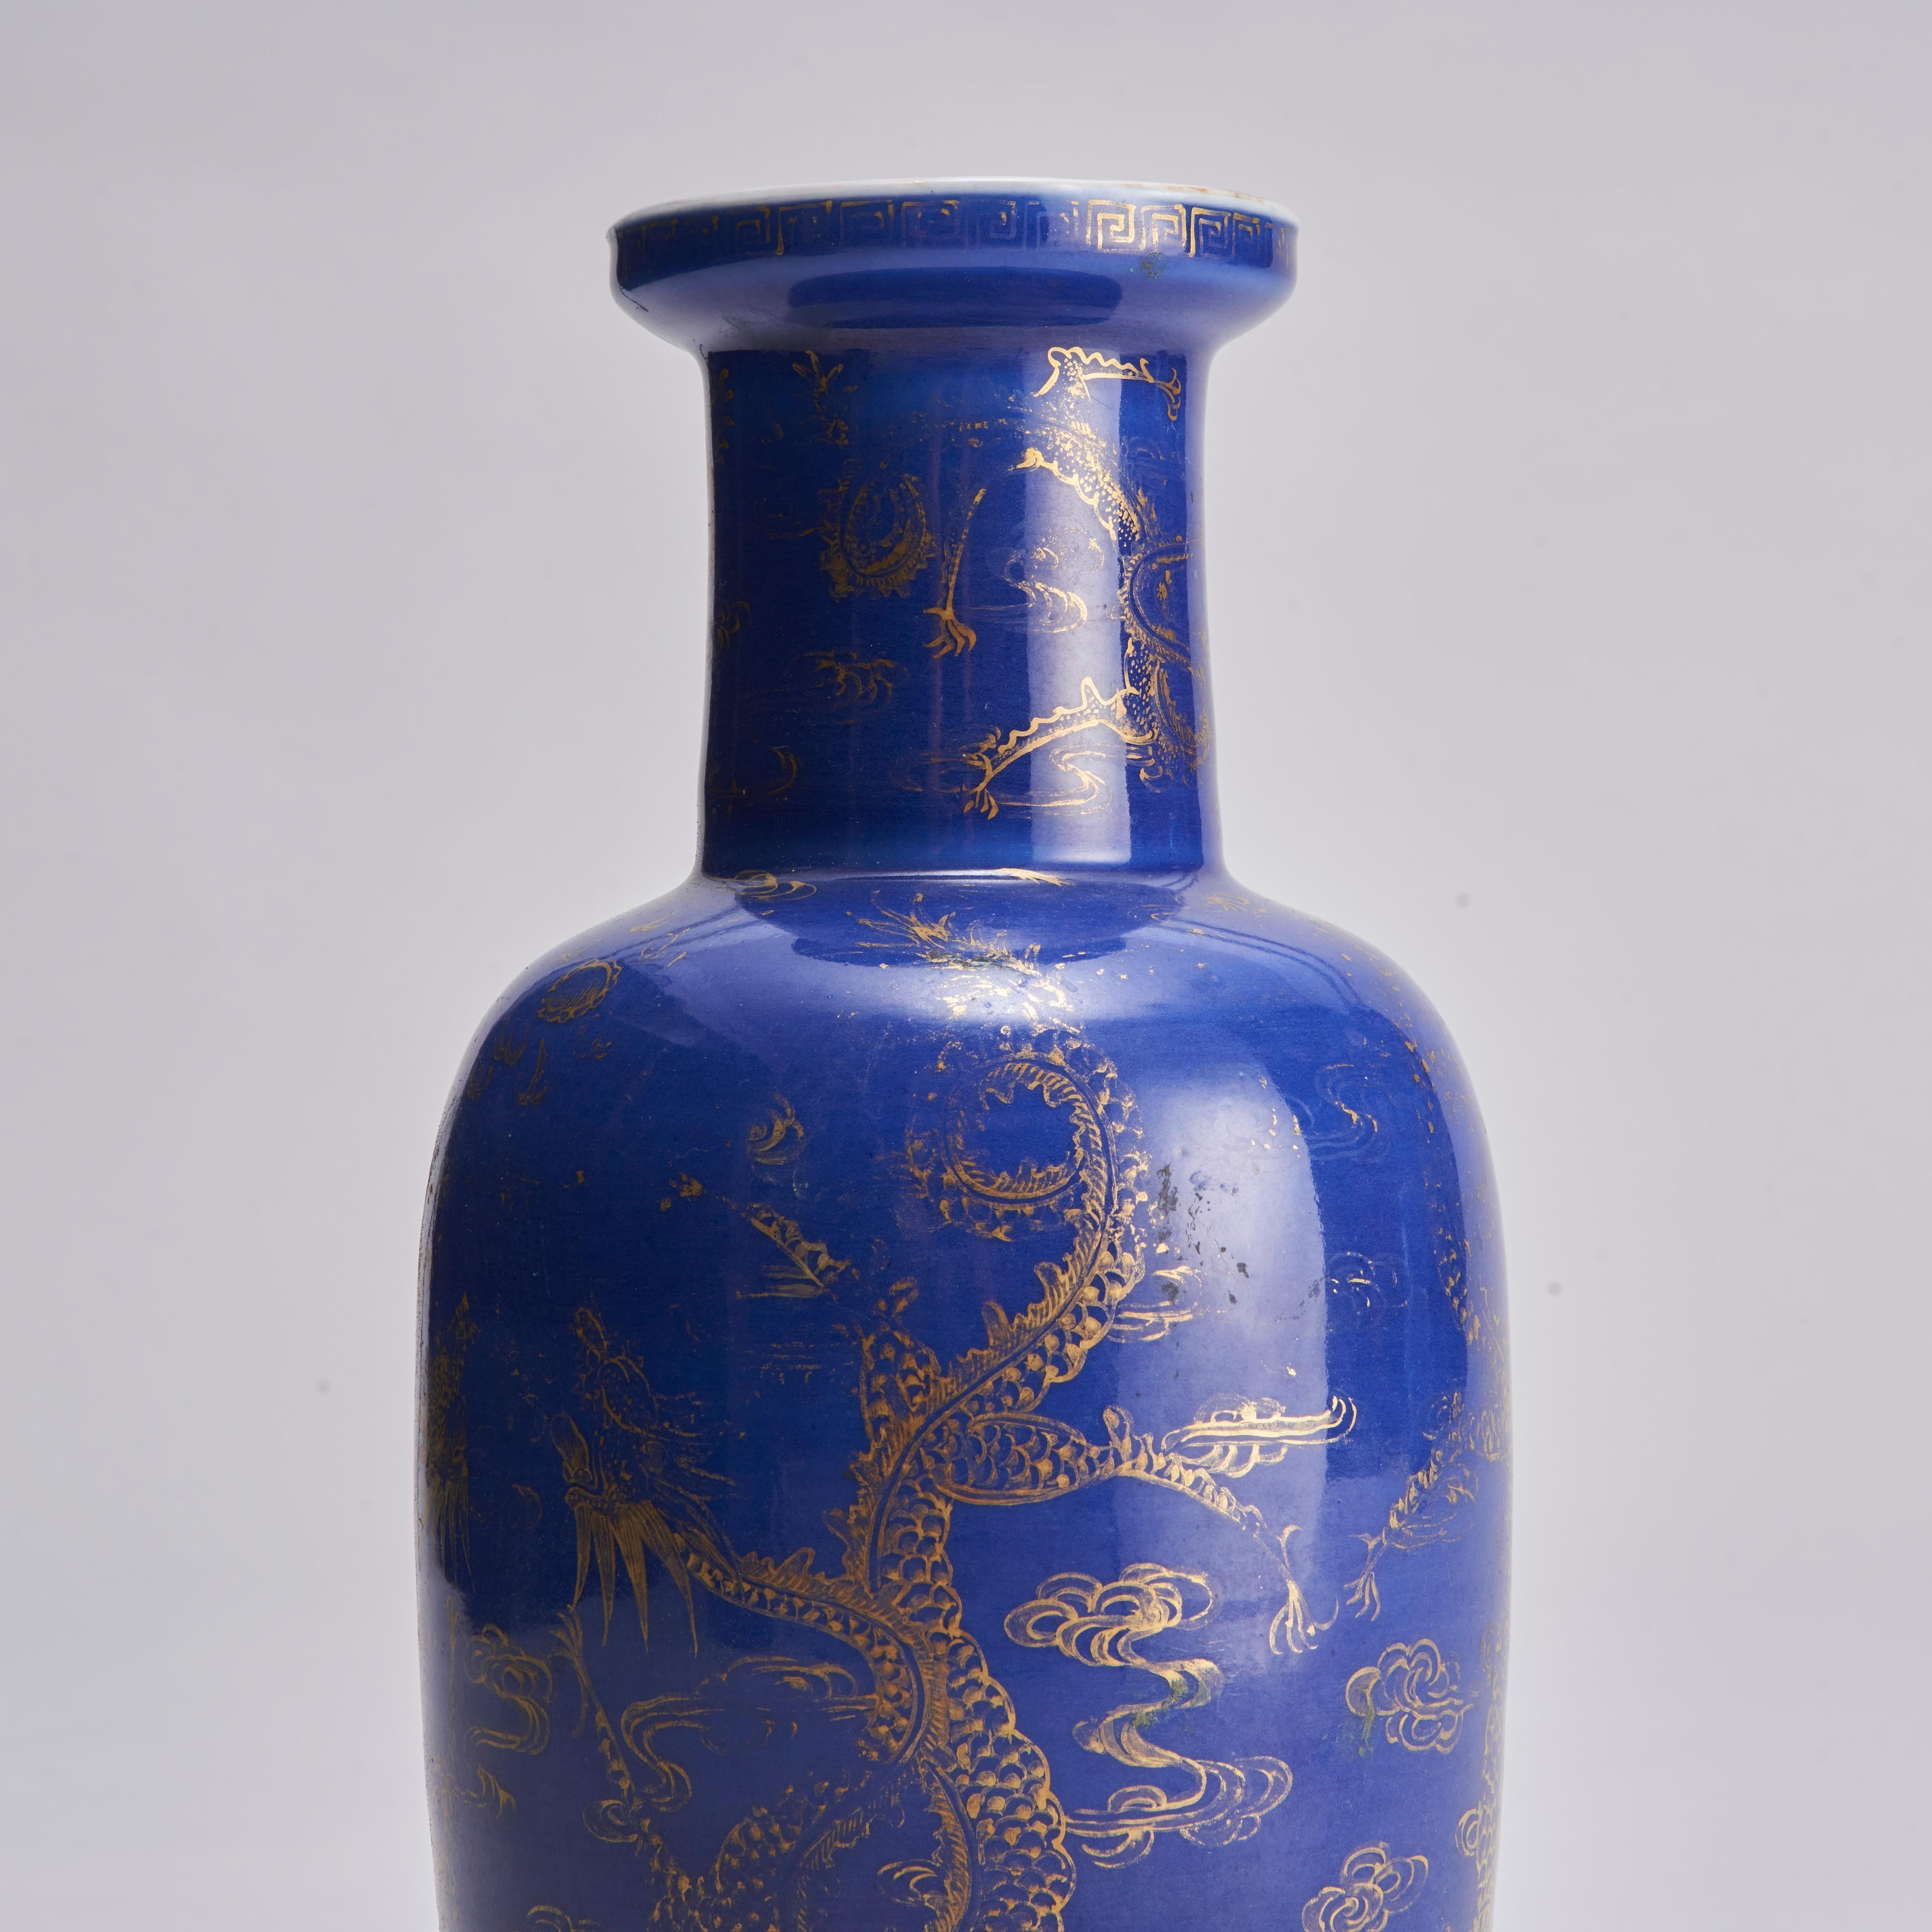 Chinois Un vase rouleau bleu poudre en porcelaine chinoise du 19ème siècle avec une décoration élégante en vente